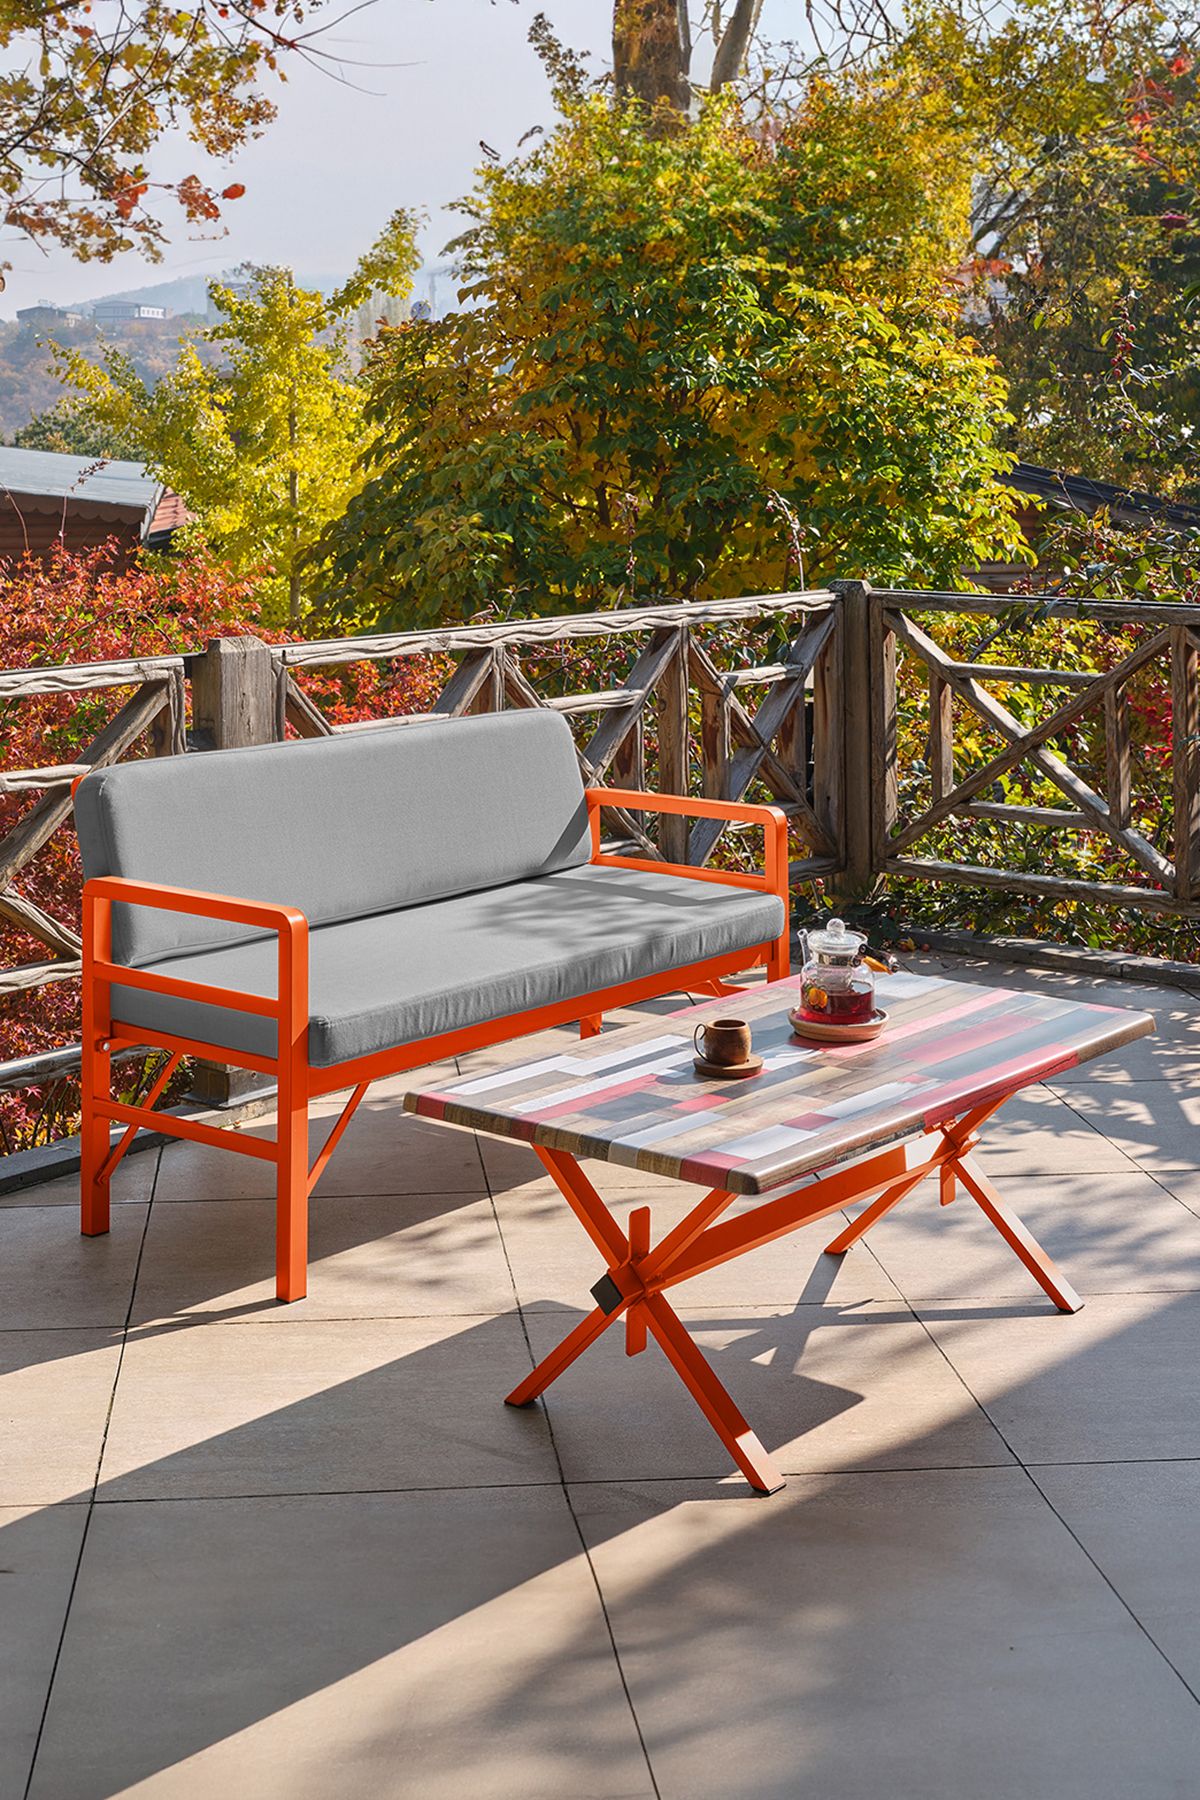 Unimet Pandora Katlanır Balkon&teras Bahçe Koltuk Turuncu-gri